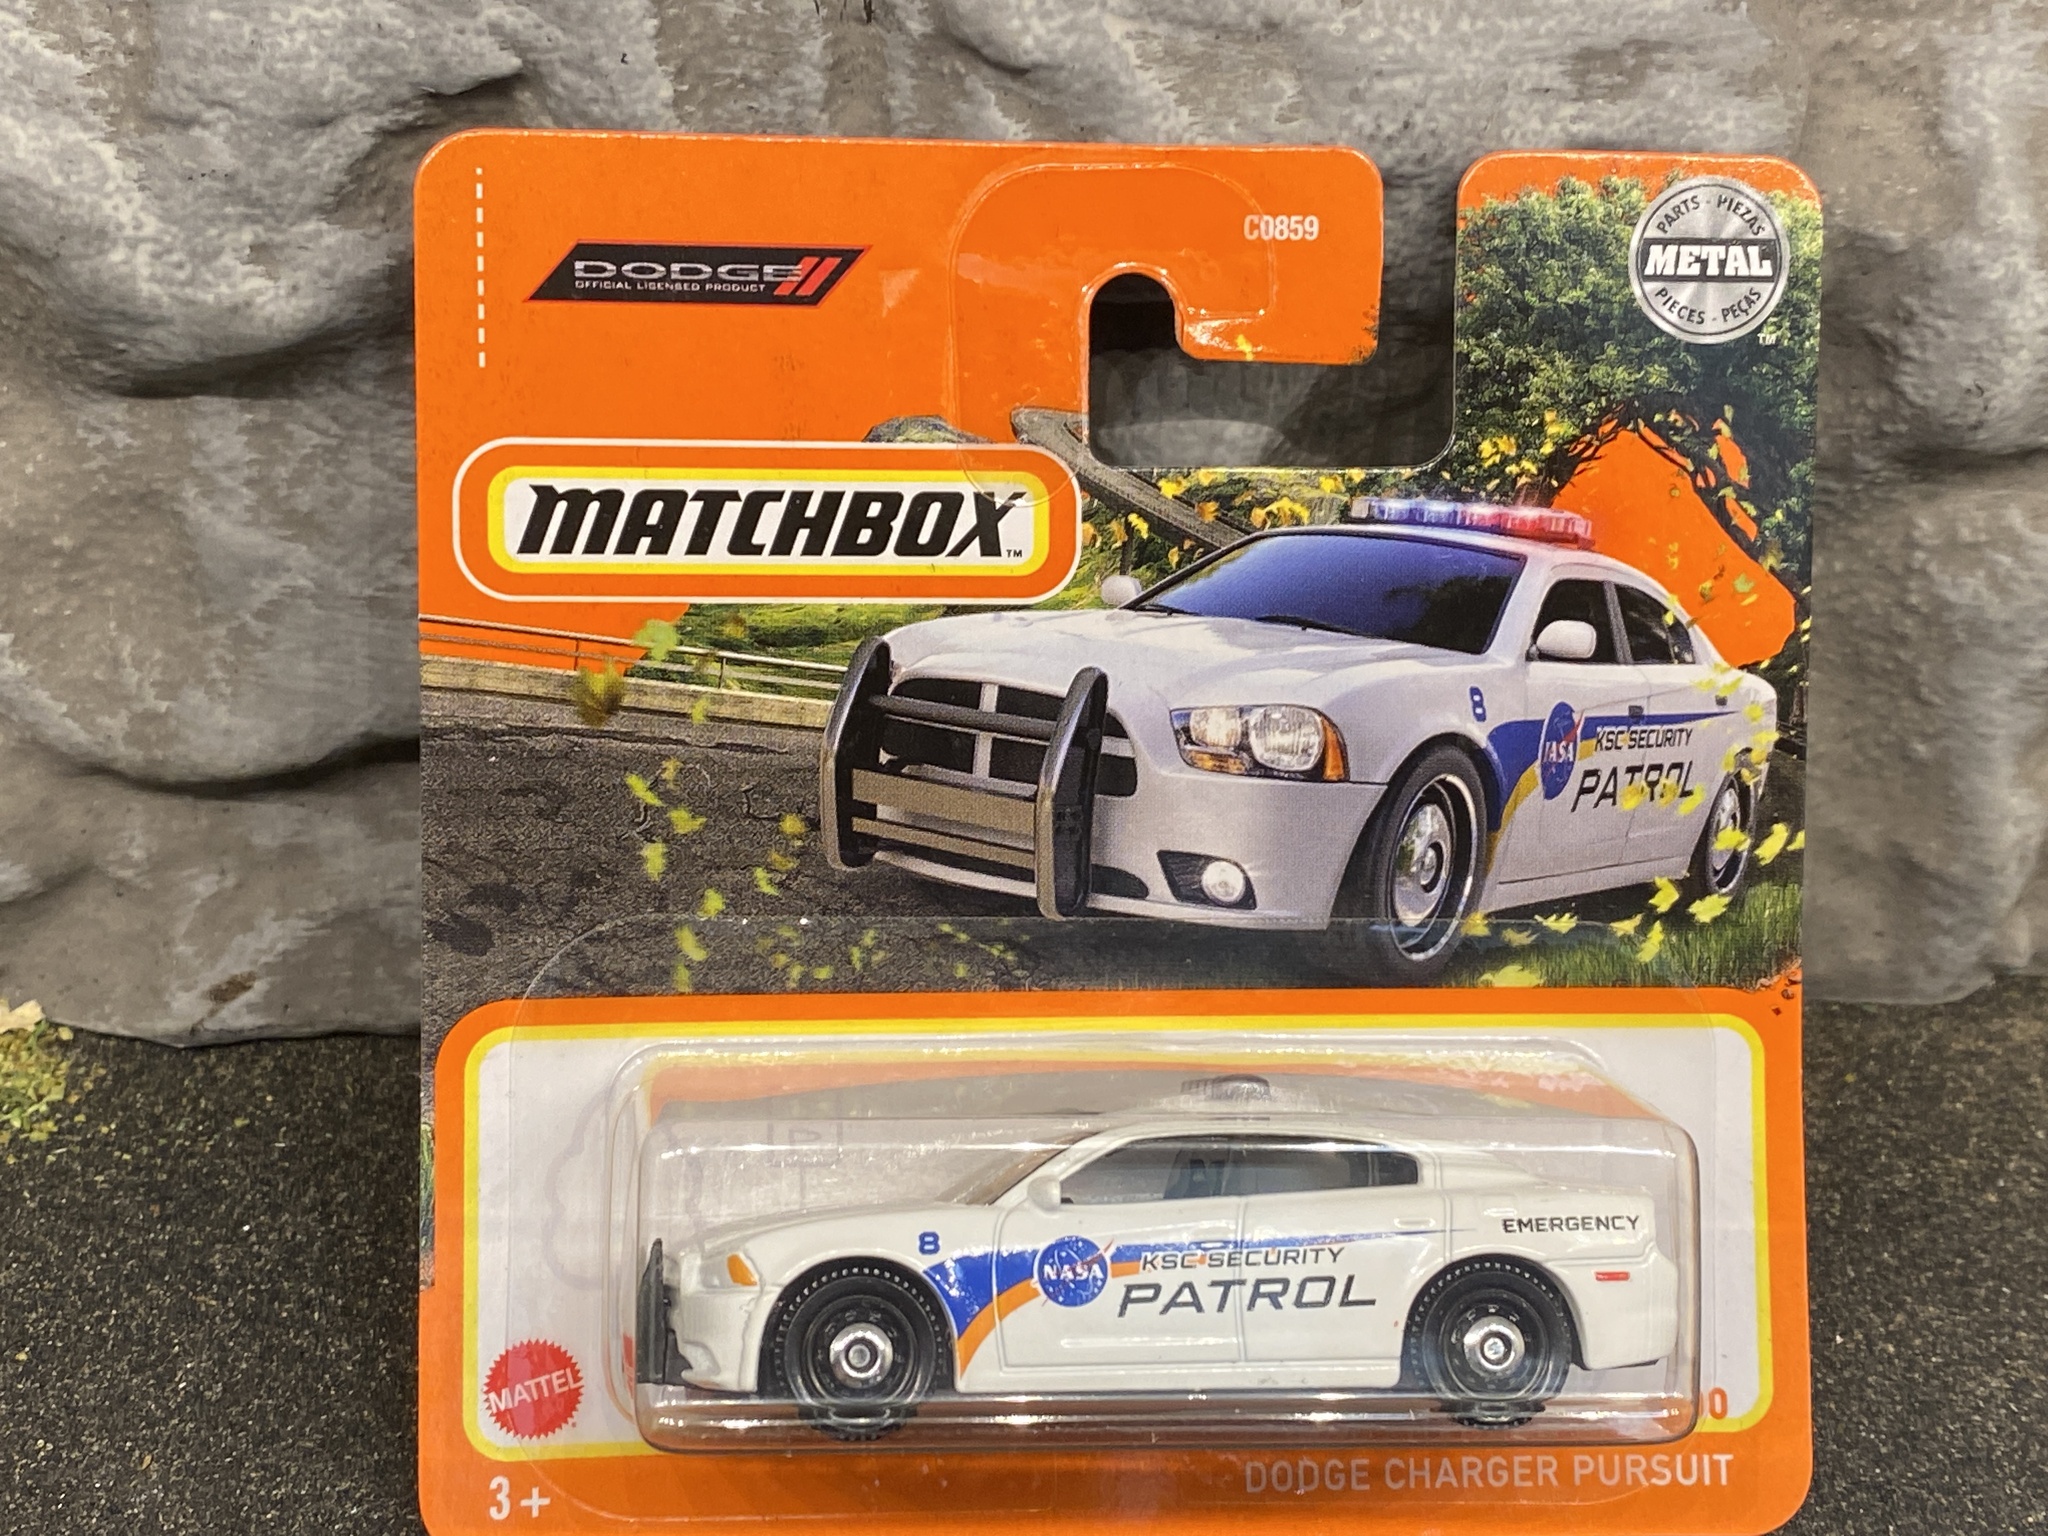 Skala 1/64 Matchbox - Dodge Charger Pursuit - Security Patrol - Polisbil